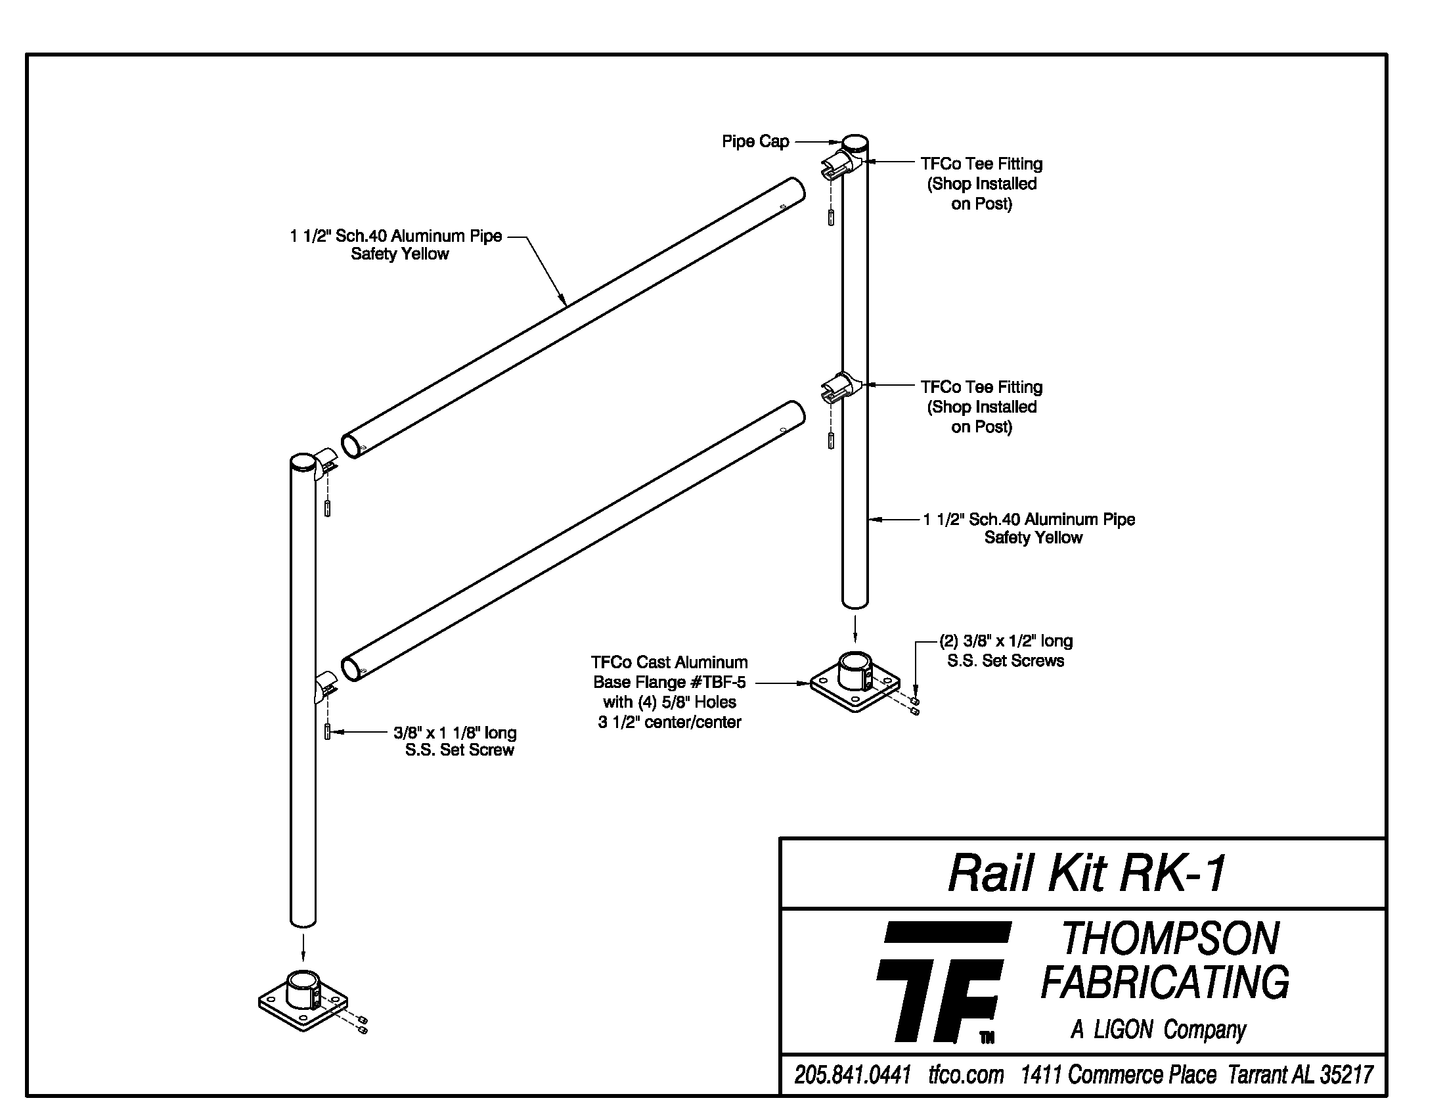 Rail Kit RK-1